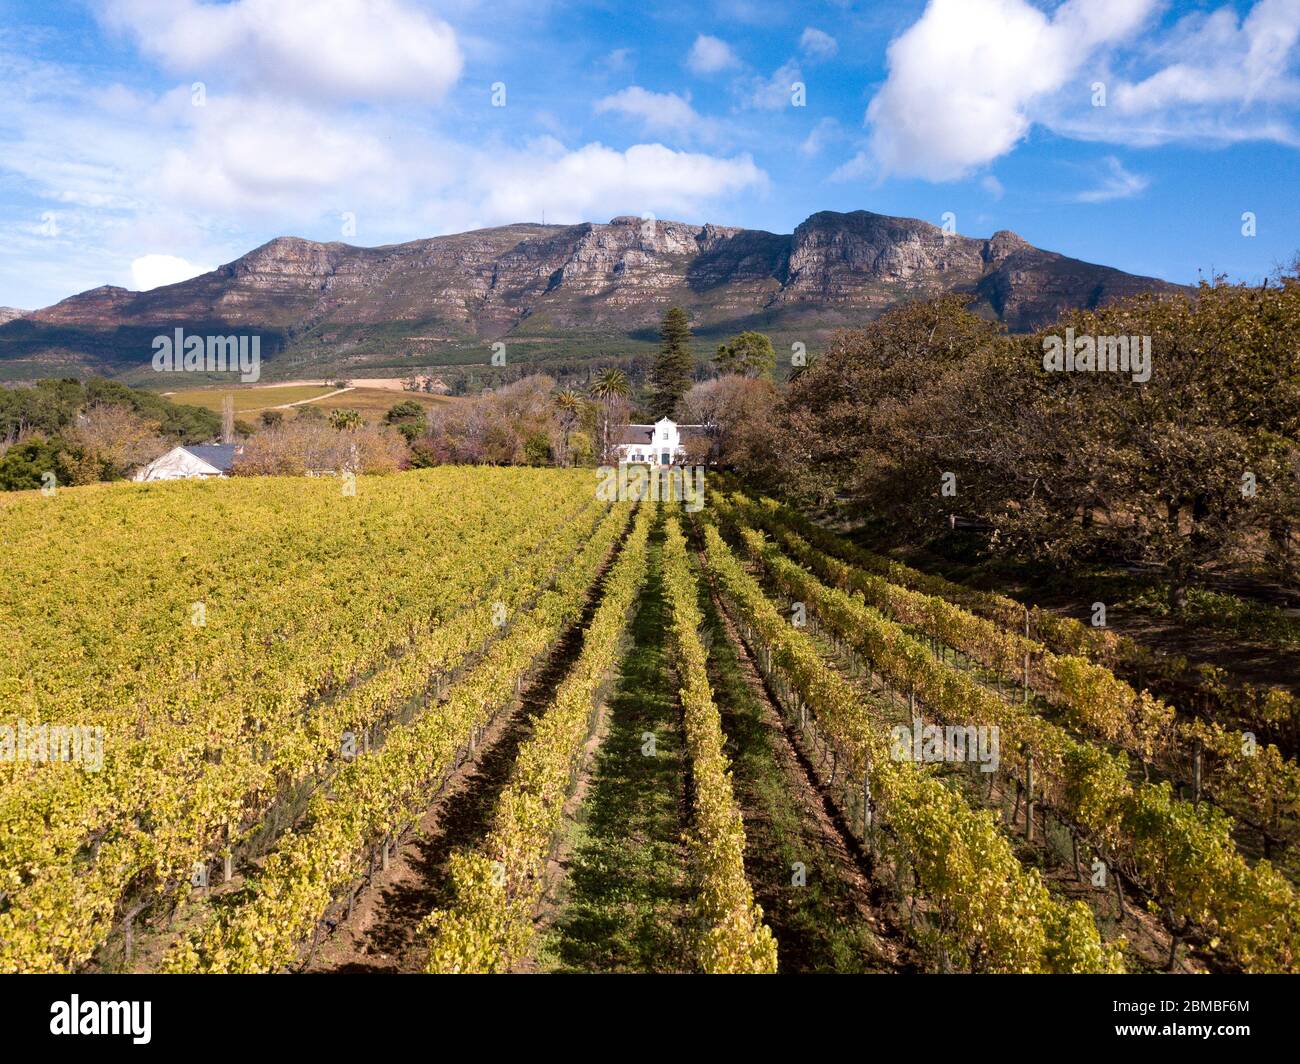 Aérea de una granja de vinos en Ciudad del Cabo, Sudáfrica Foto de stock